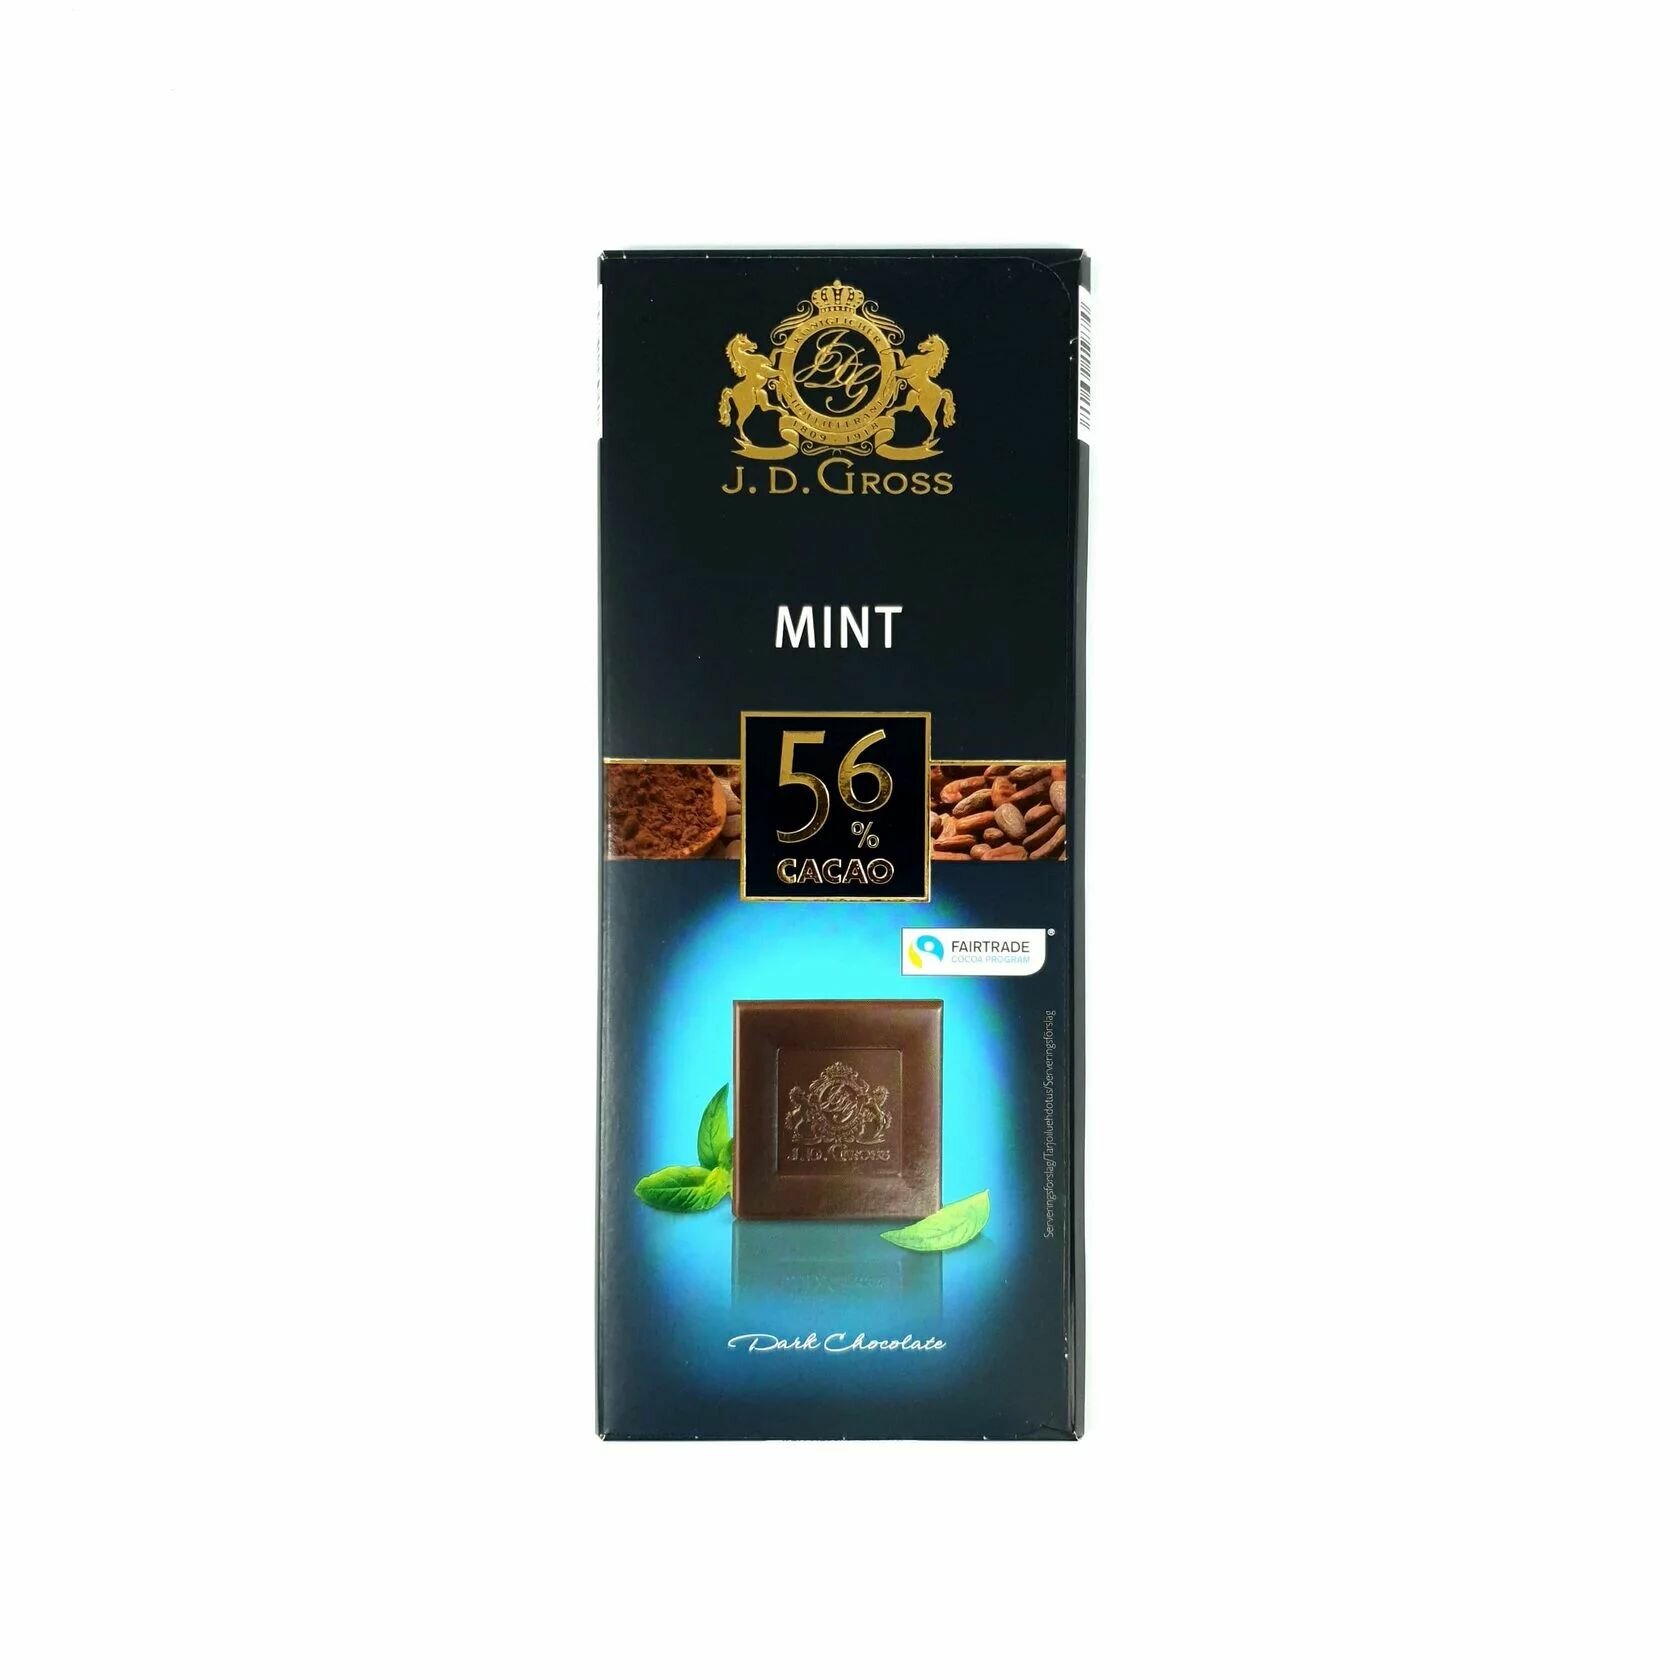 Темный шоколад c мятой , содержание какао 56%, J. D. Gross Mint, 125гр. Германия